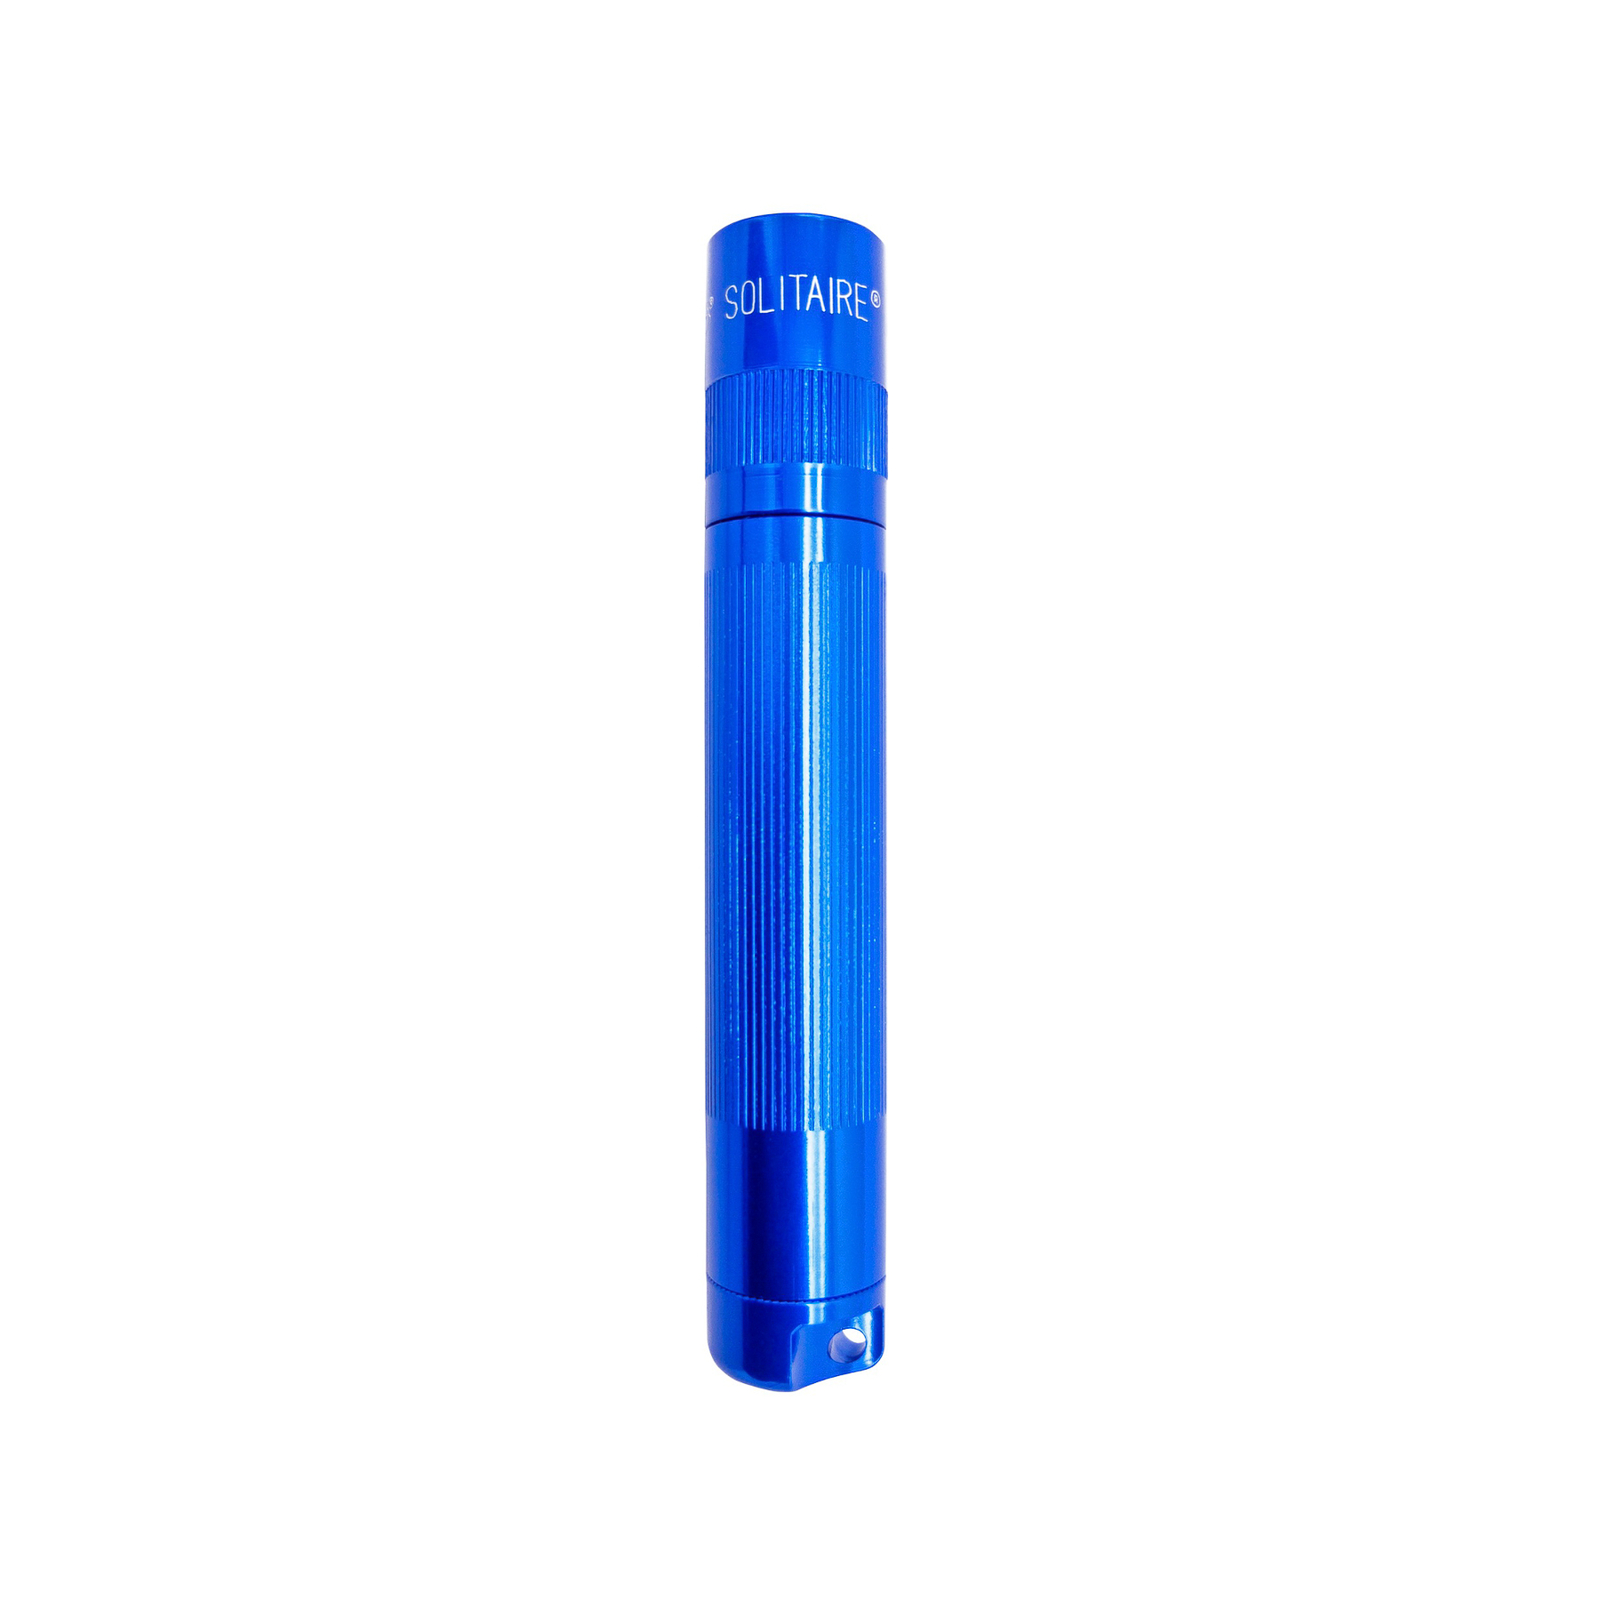 Torcia Maglite Xenon Solitaire 1 cella AAA blu